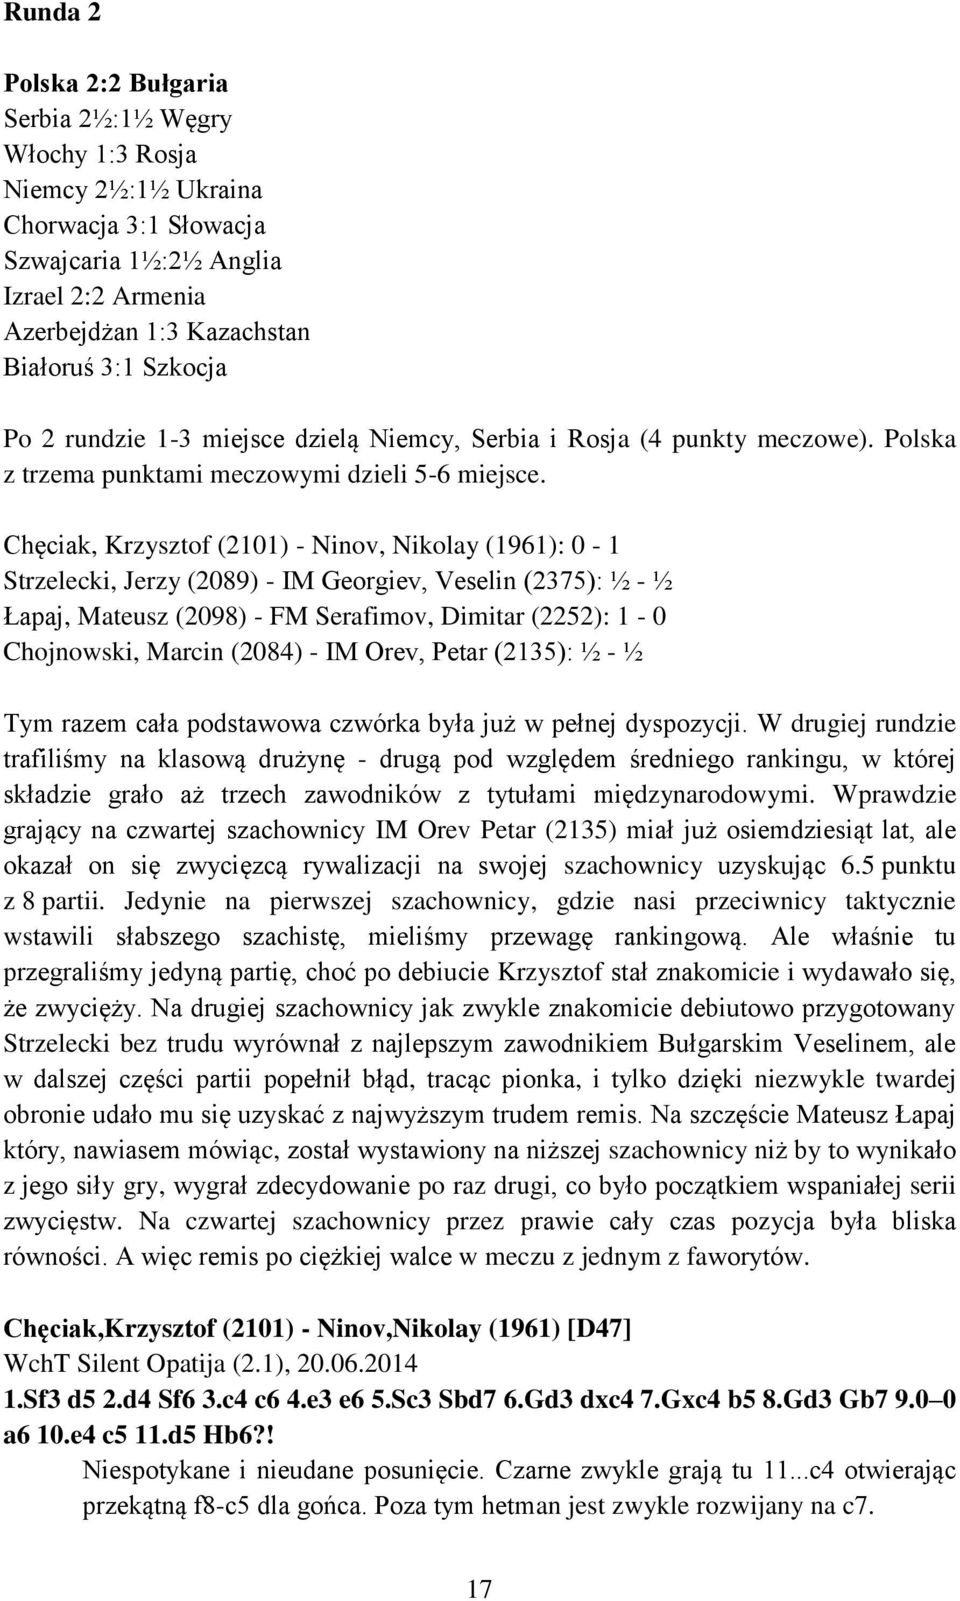 Chęciak, Krzysztof (2101) - Ninov, Nikolay (1961): 0-1 Strzelecki, Jerzy (2089) - IM Georgiev, Veselin (2375): ½ - ½ Łapaj, Mateusz (2098) - FM Serafimov, Dimitar (2252): 1-0 Chojnowski, Marcin